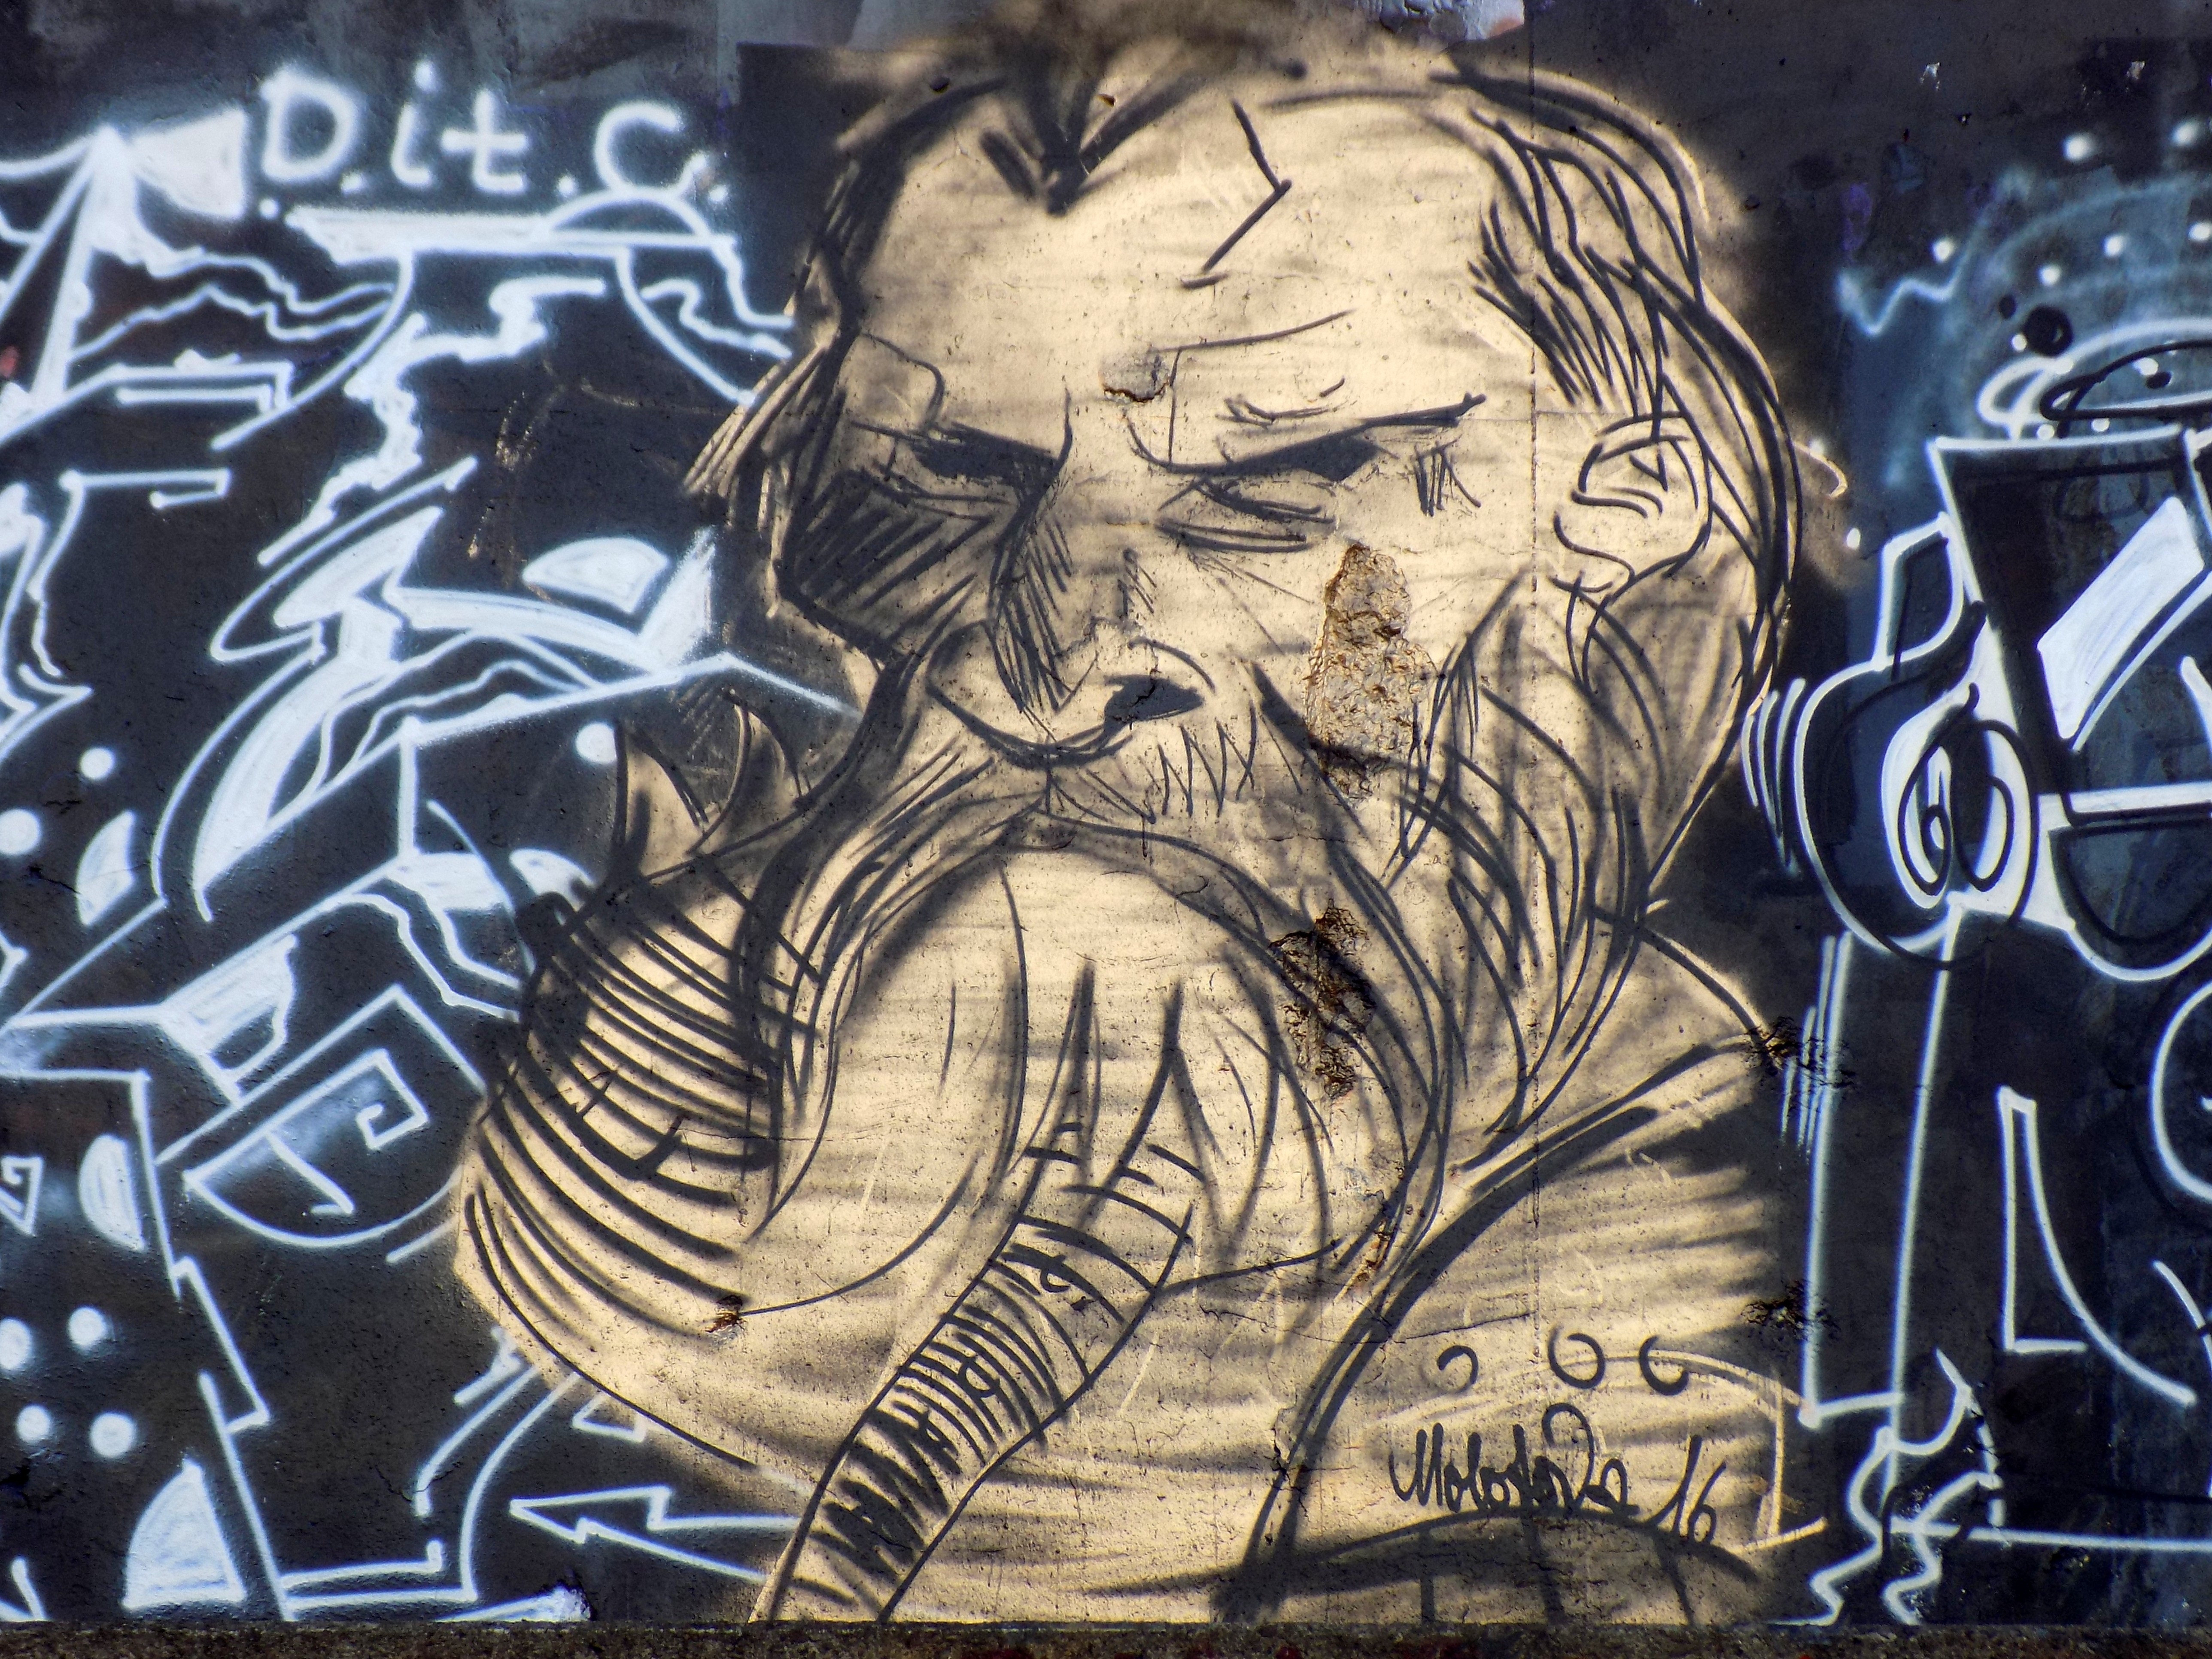 graffiti of man with long beard